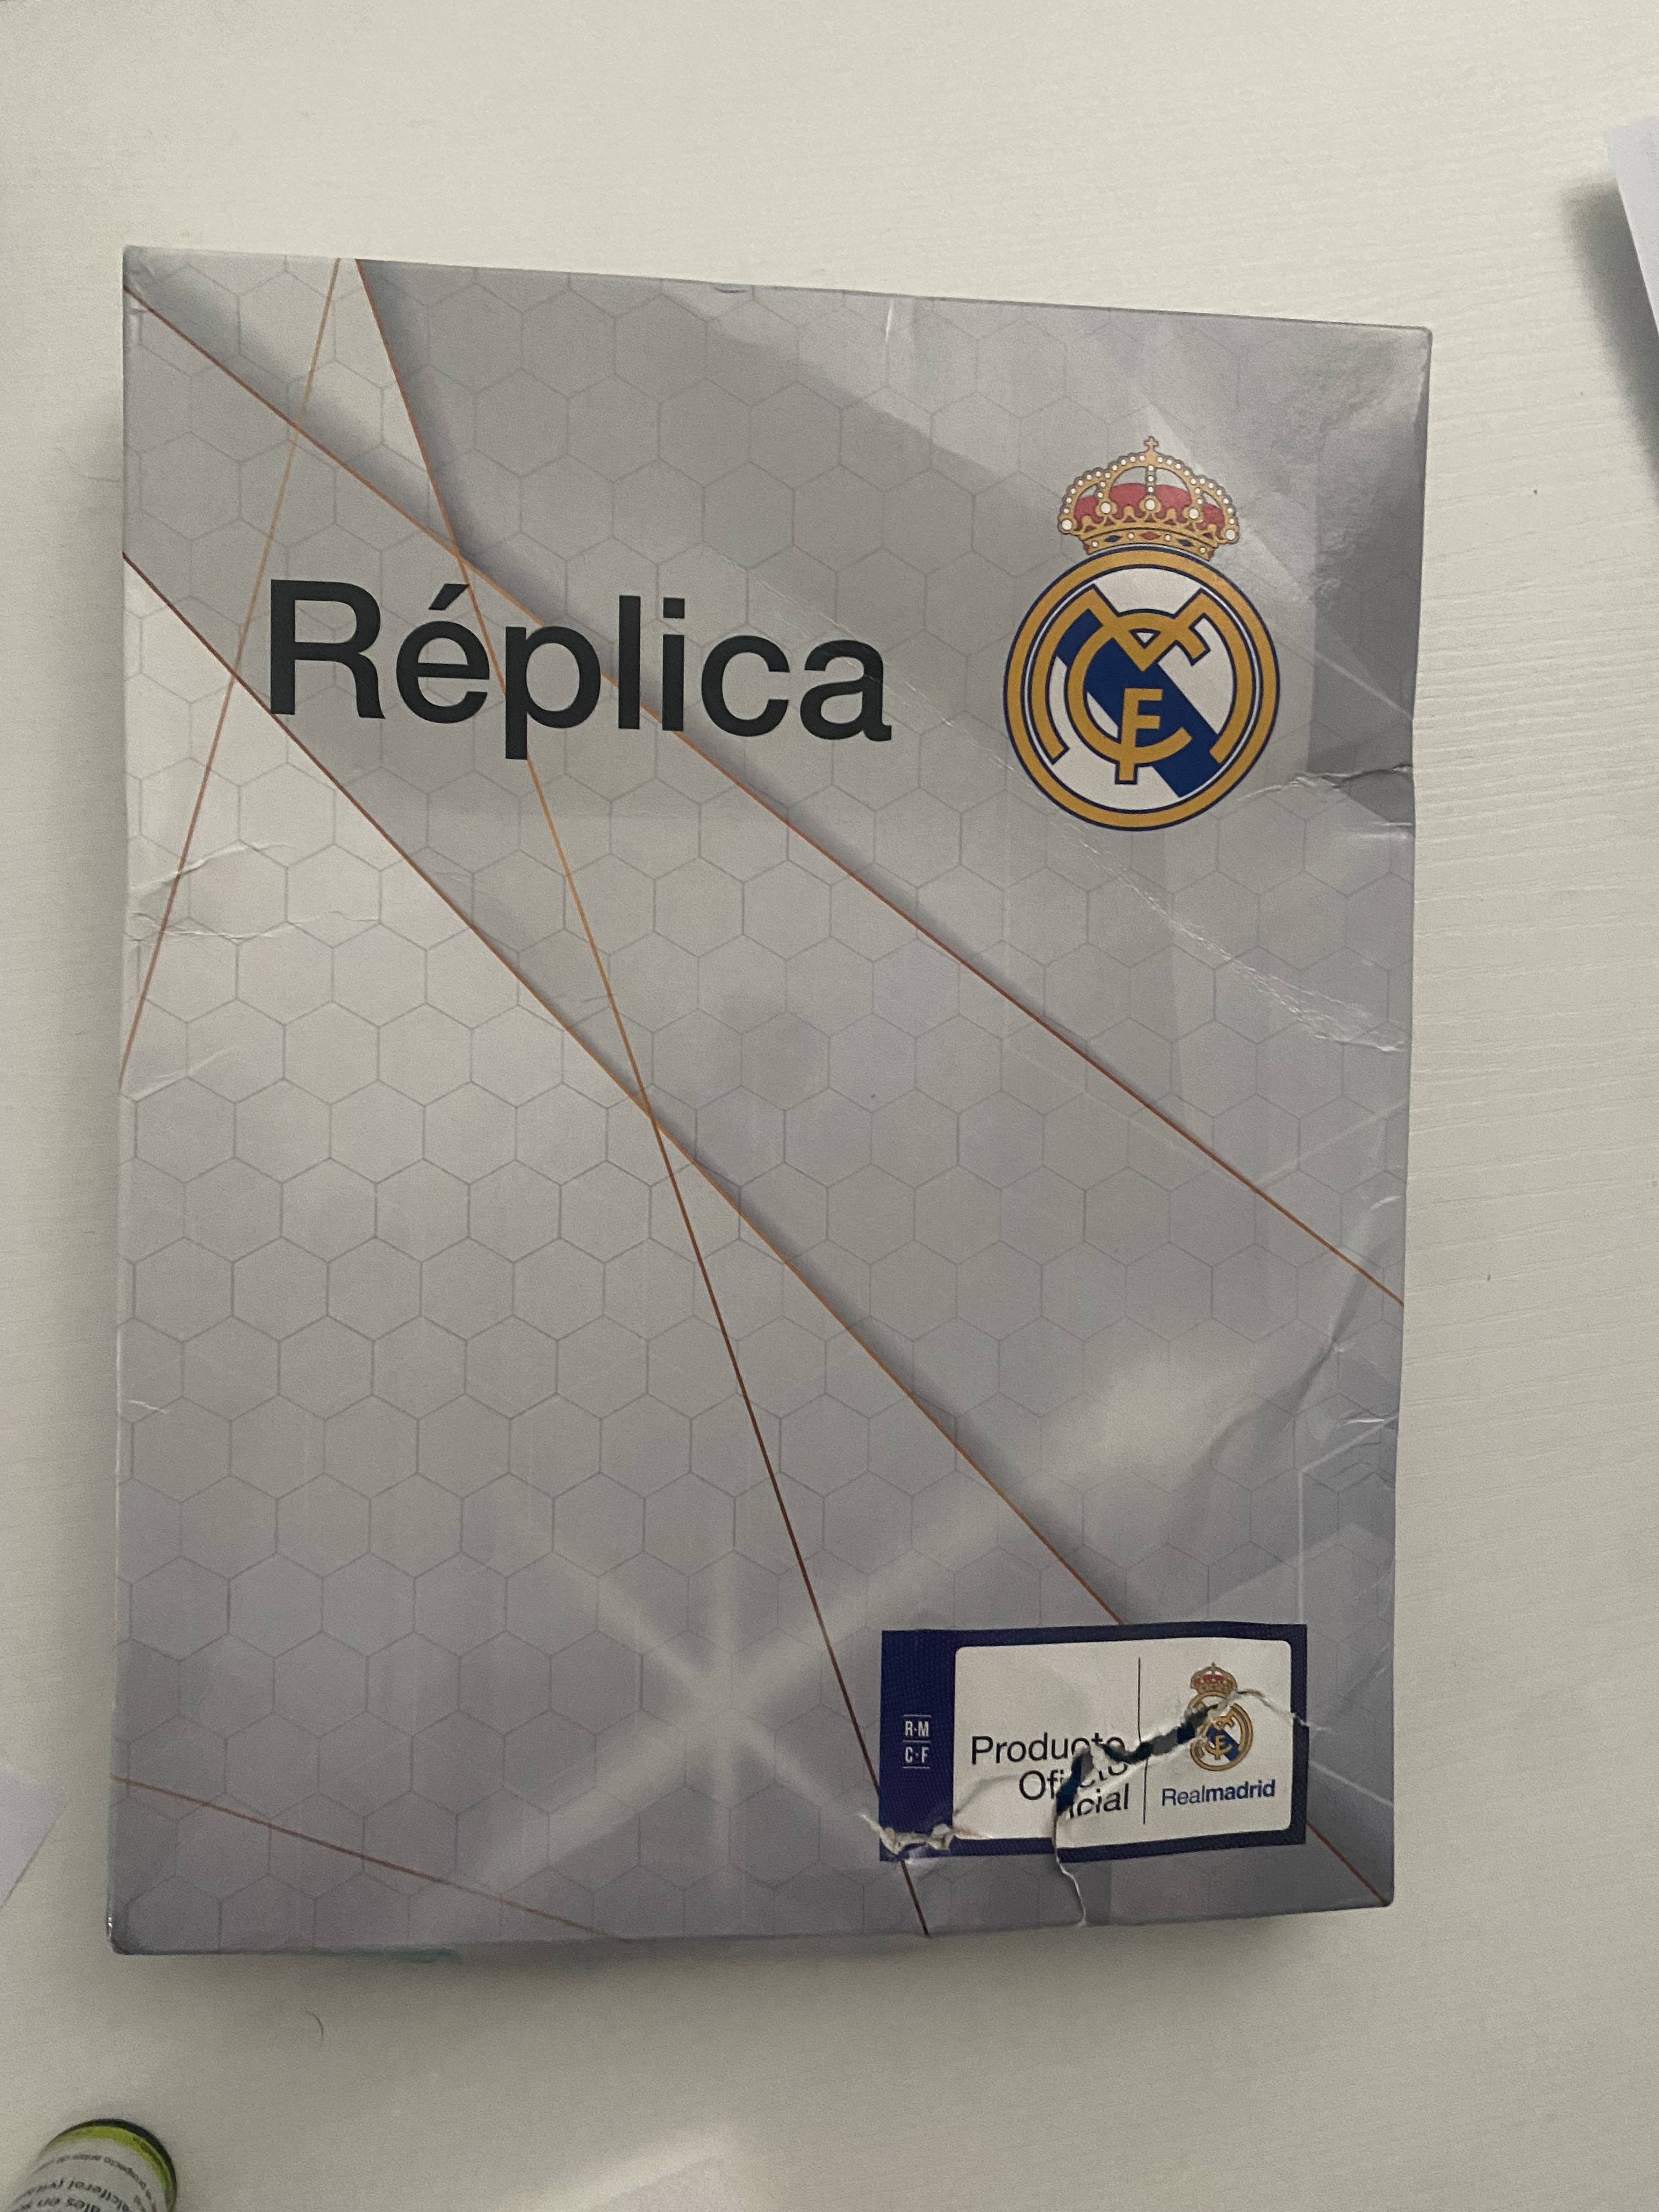 Camiseta Personalizable Real Madrid Producto Oficial Licenciado-réplica  Oficial 23